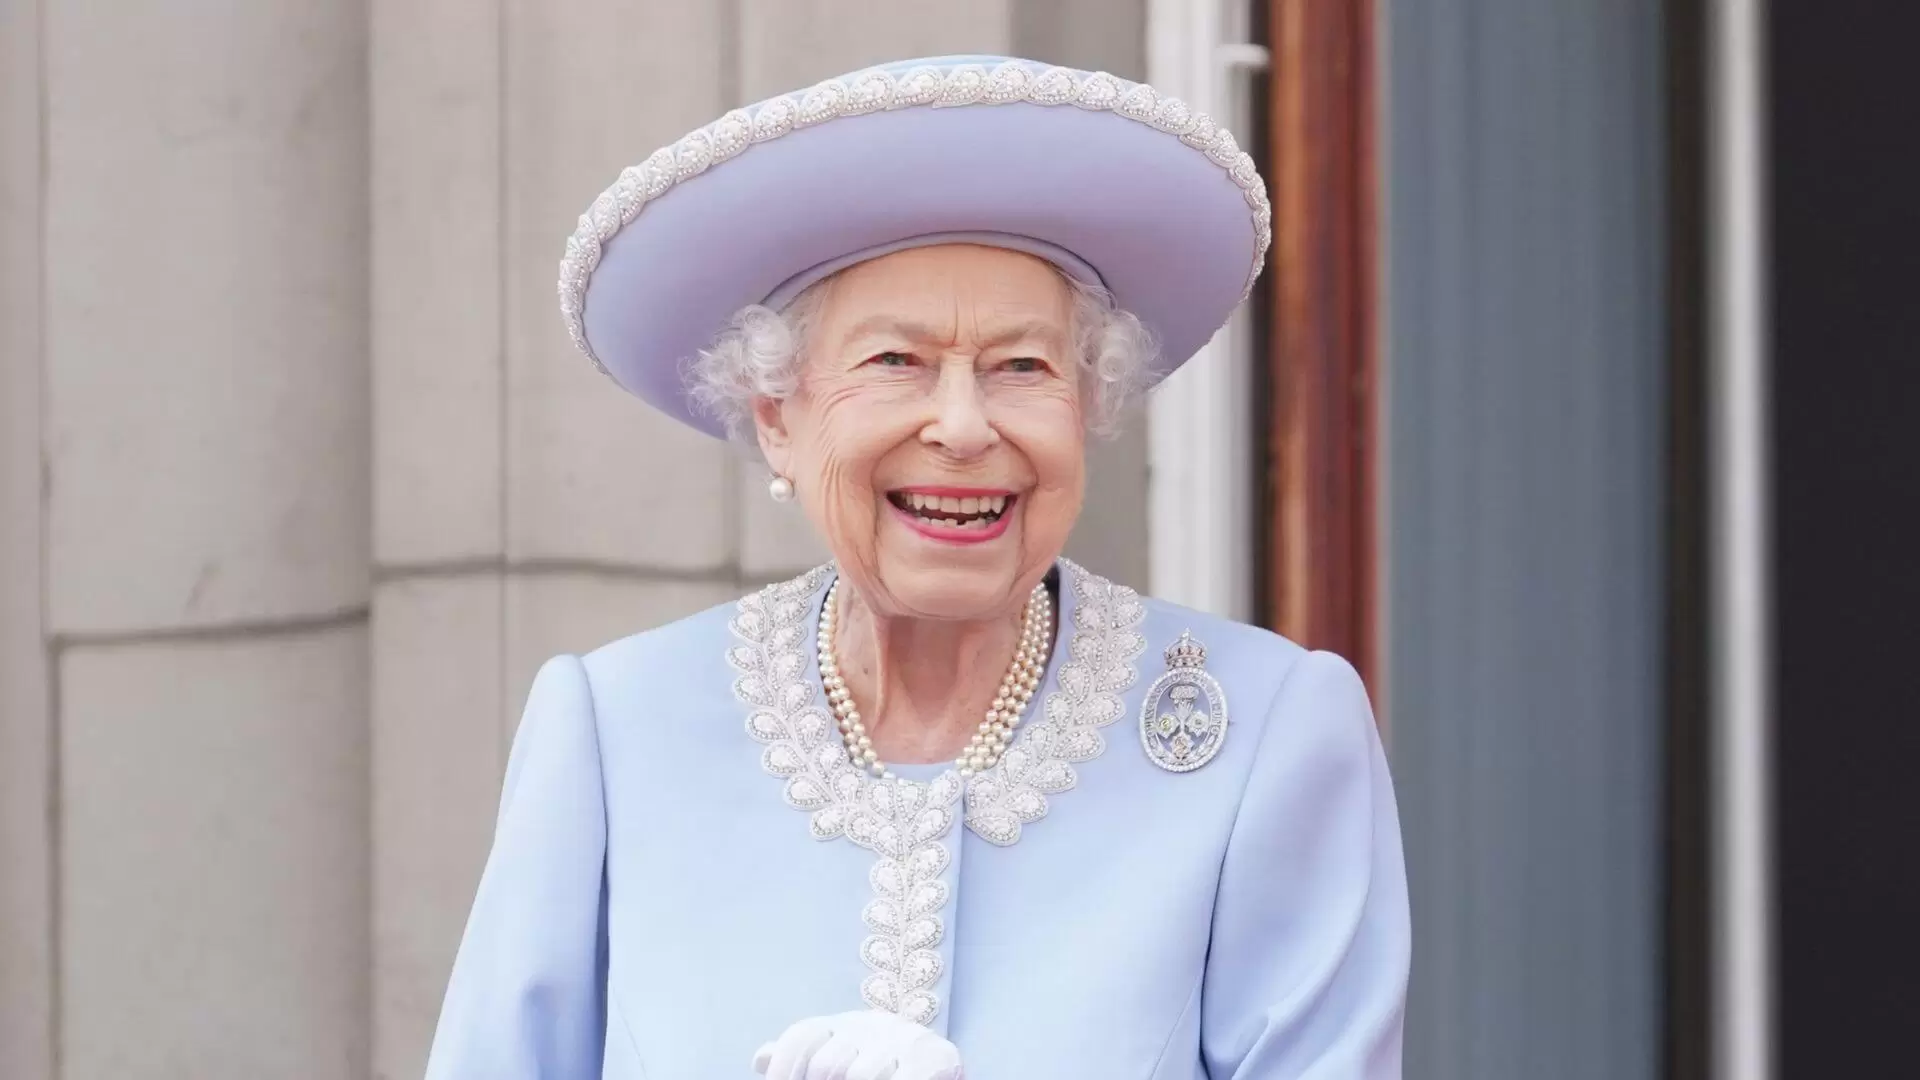 Aging royally 10 beauty secrets of Elizabeth II (1)